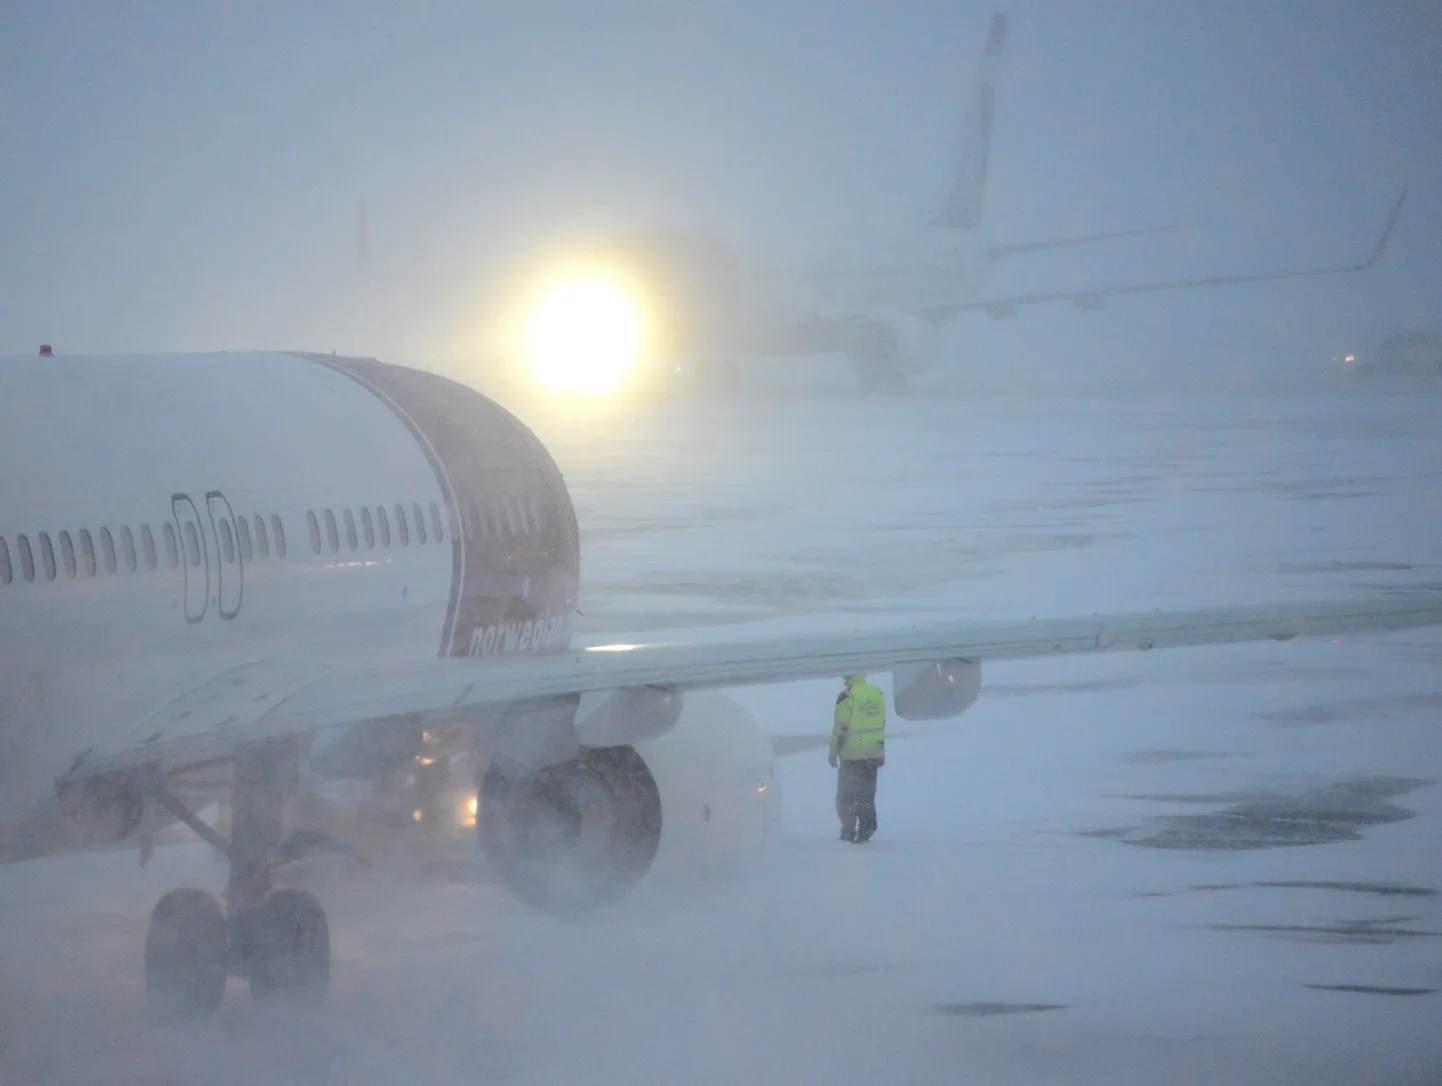 Norwegian Airline'i kaks reisilennukit Boeing 737-800 lumisel Arlanda lennuväljal täna.